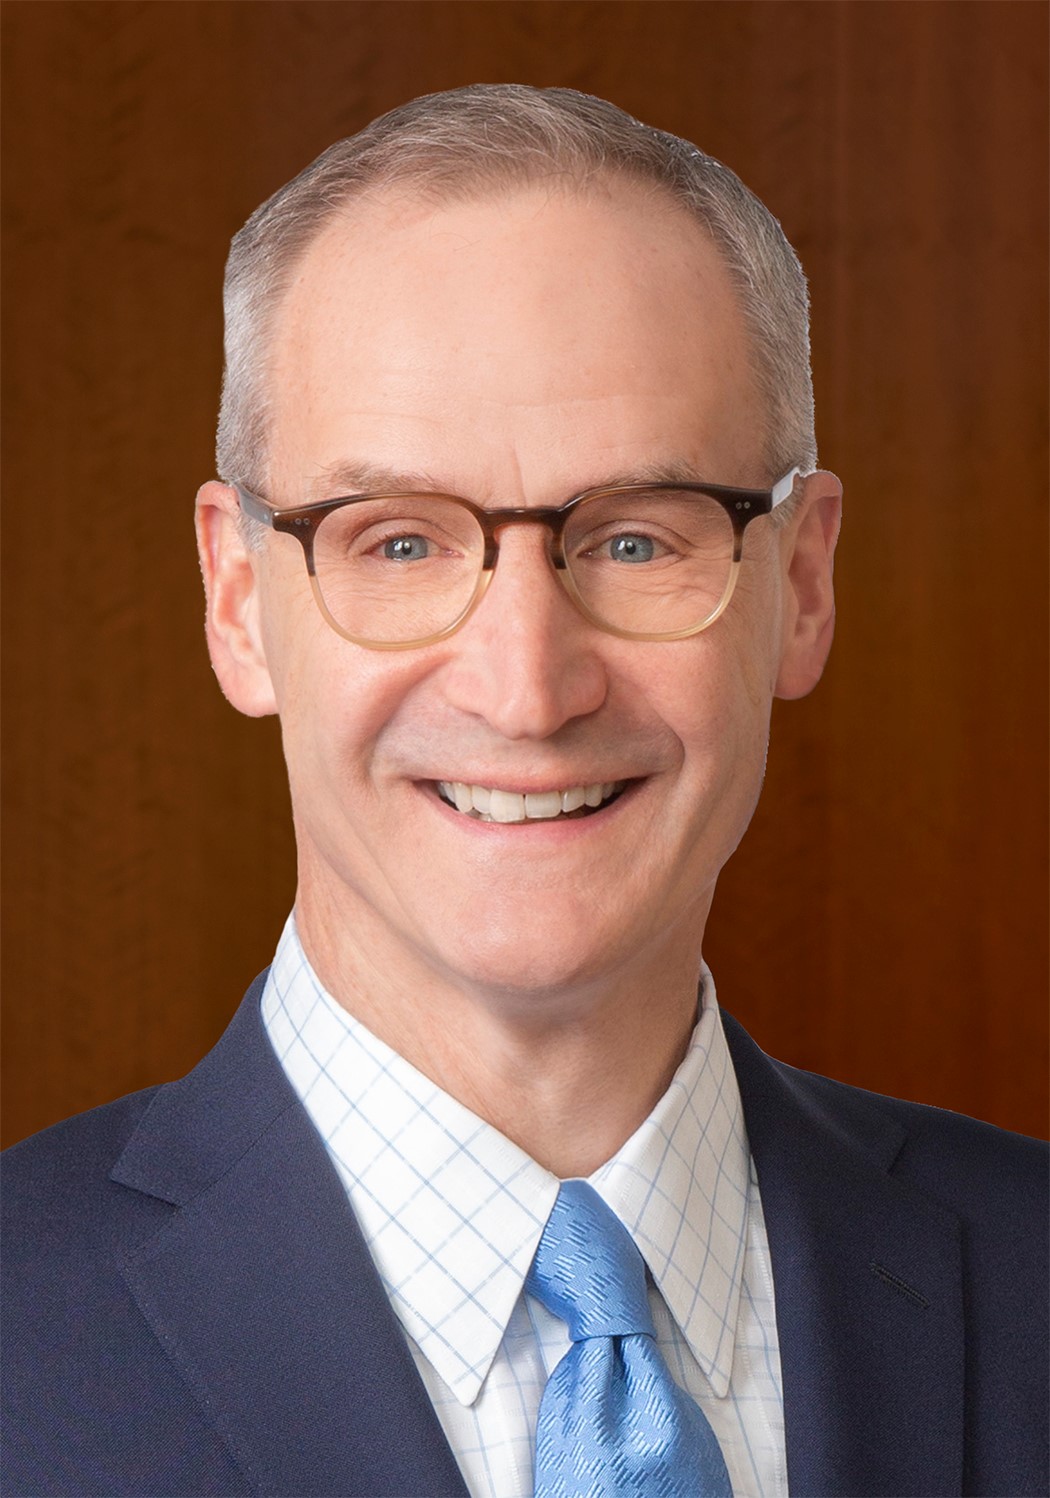 Photo of Albert S. Orr, Reinhart CEO